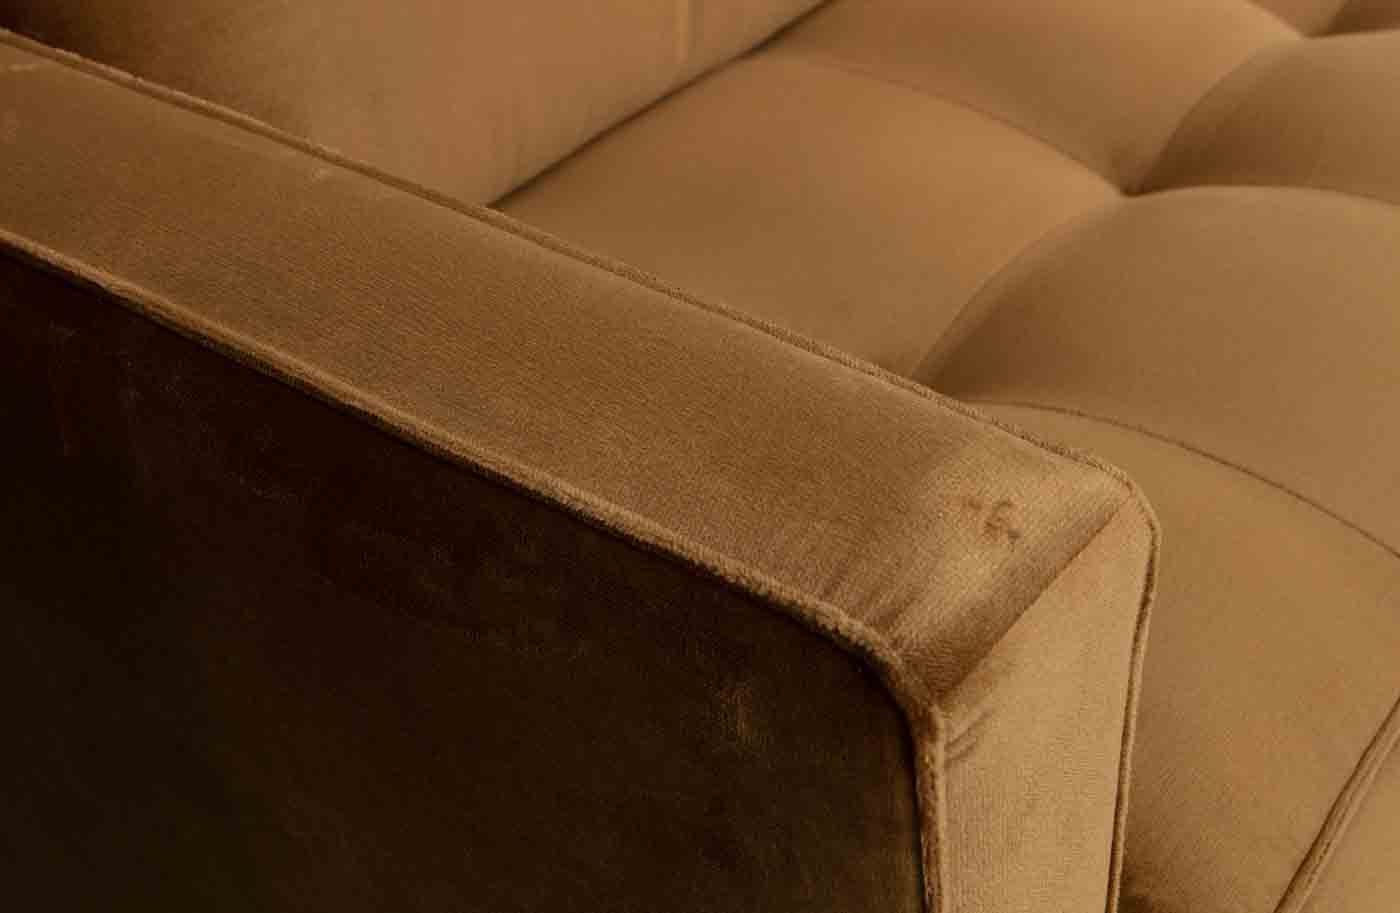 Bequemes Sofa Rodeo Classic mit gesteppten Samtbezug. Hochwertige Verarbeitung und traumhaftes Design